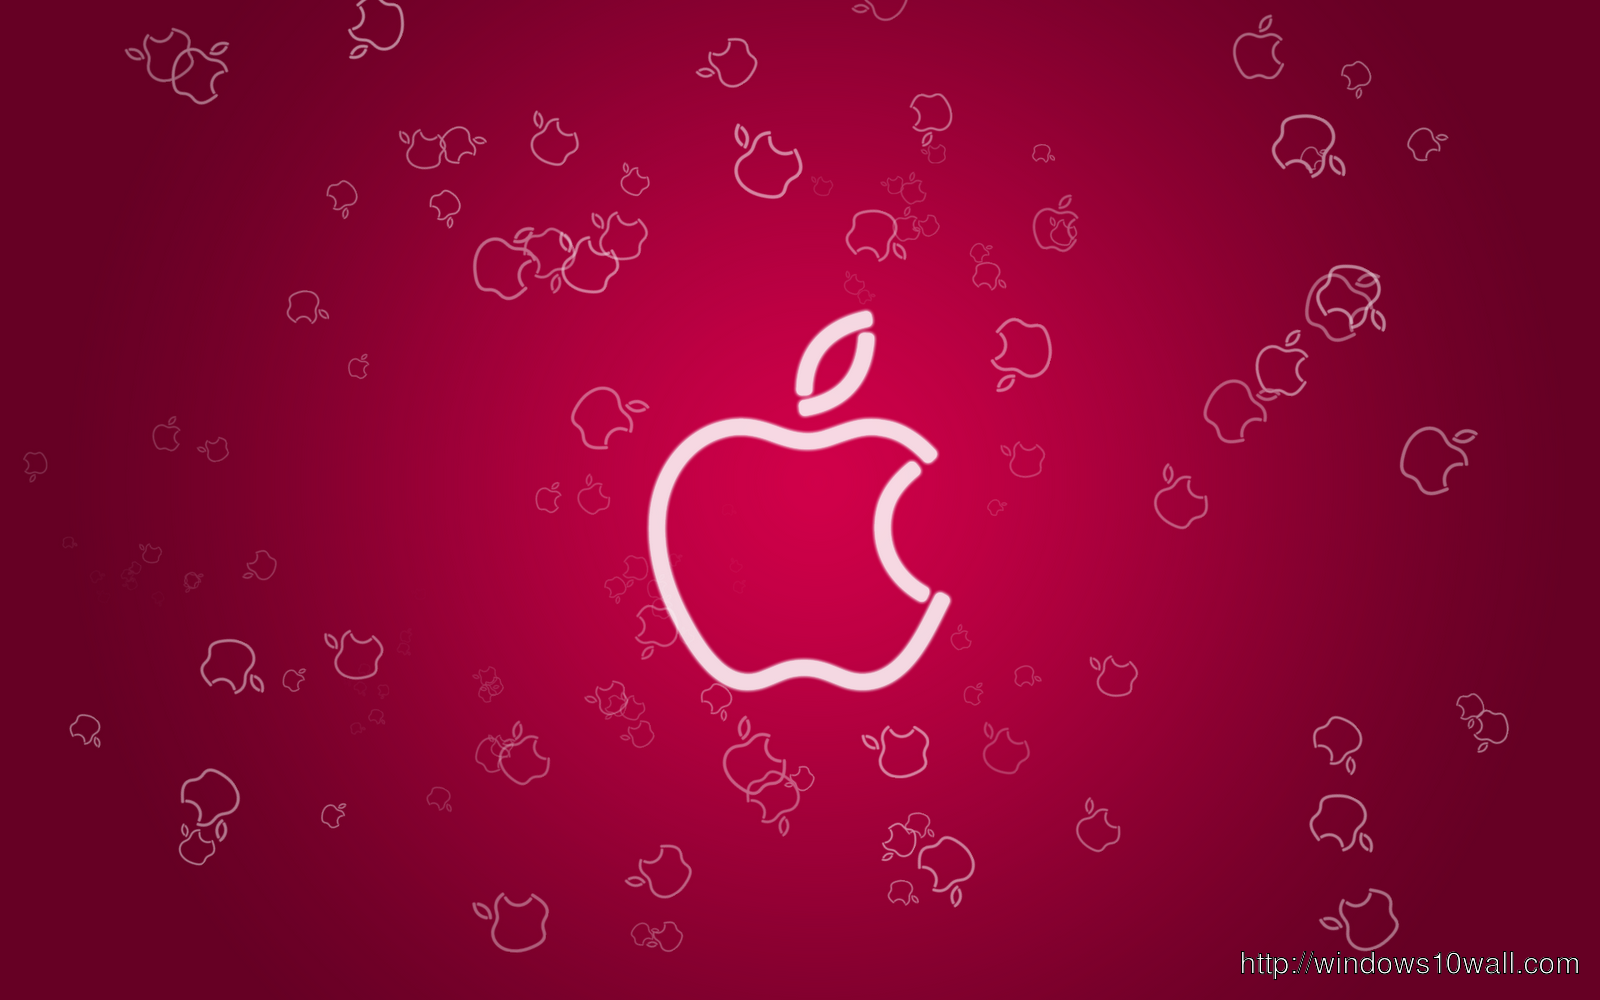 Pinkish Background Image of Apple